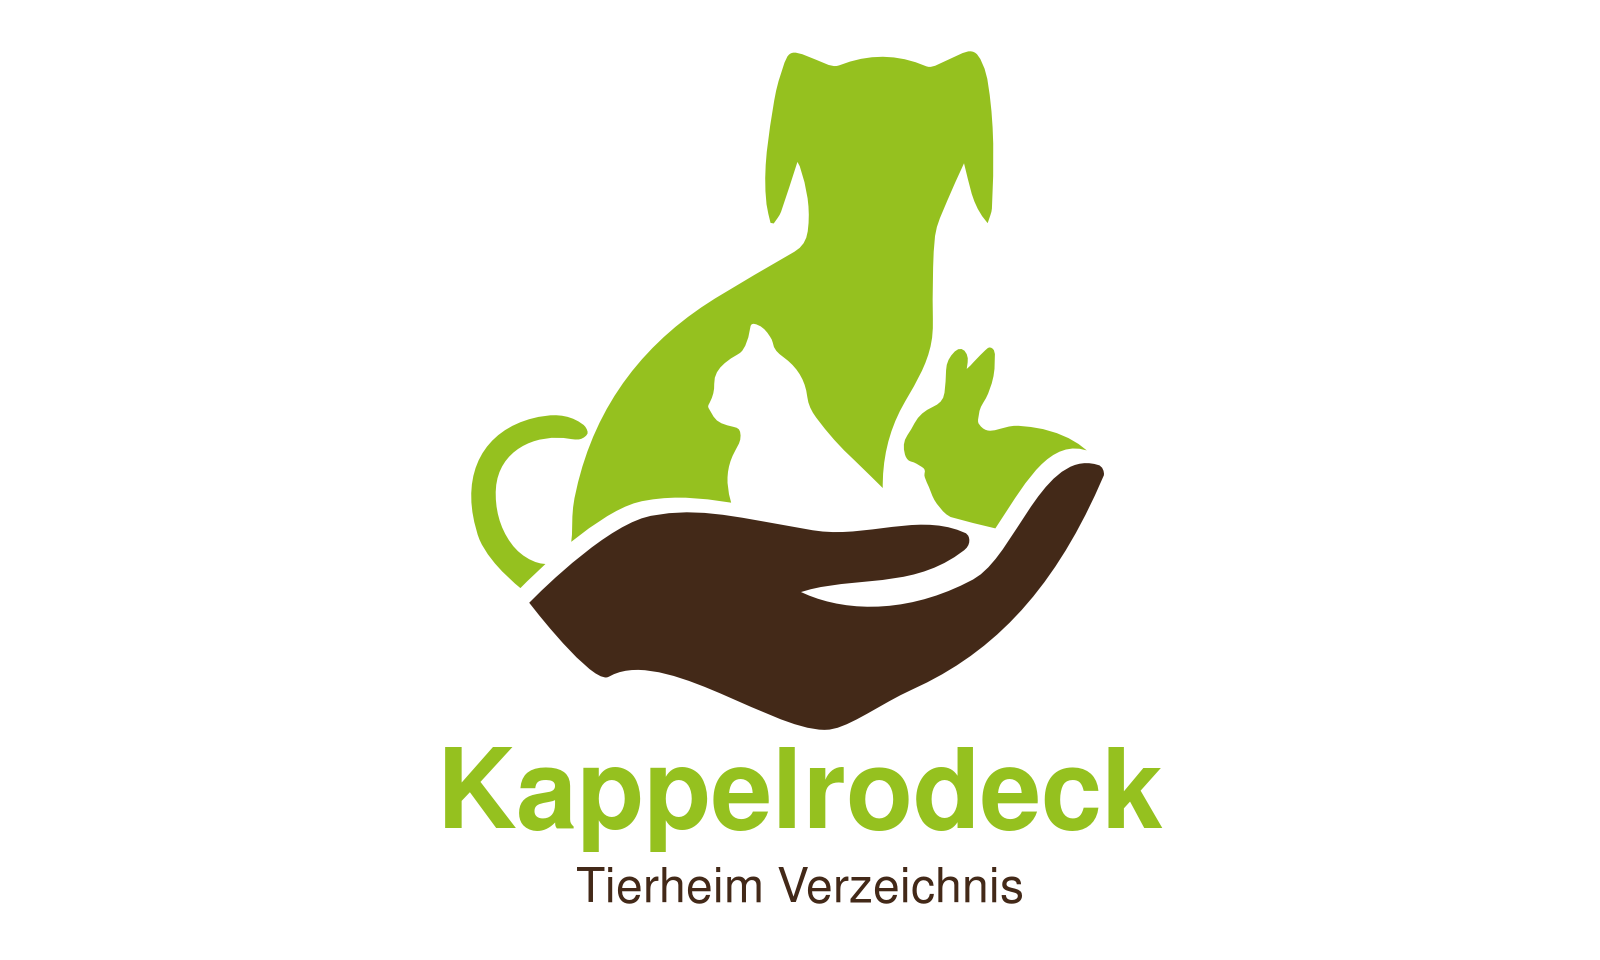 Tierheim Kappelrodeck